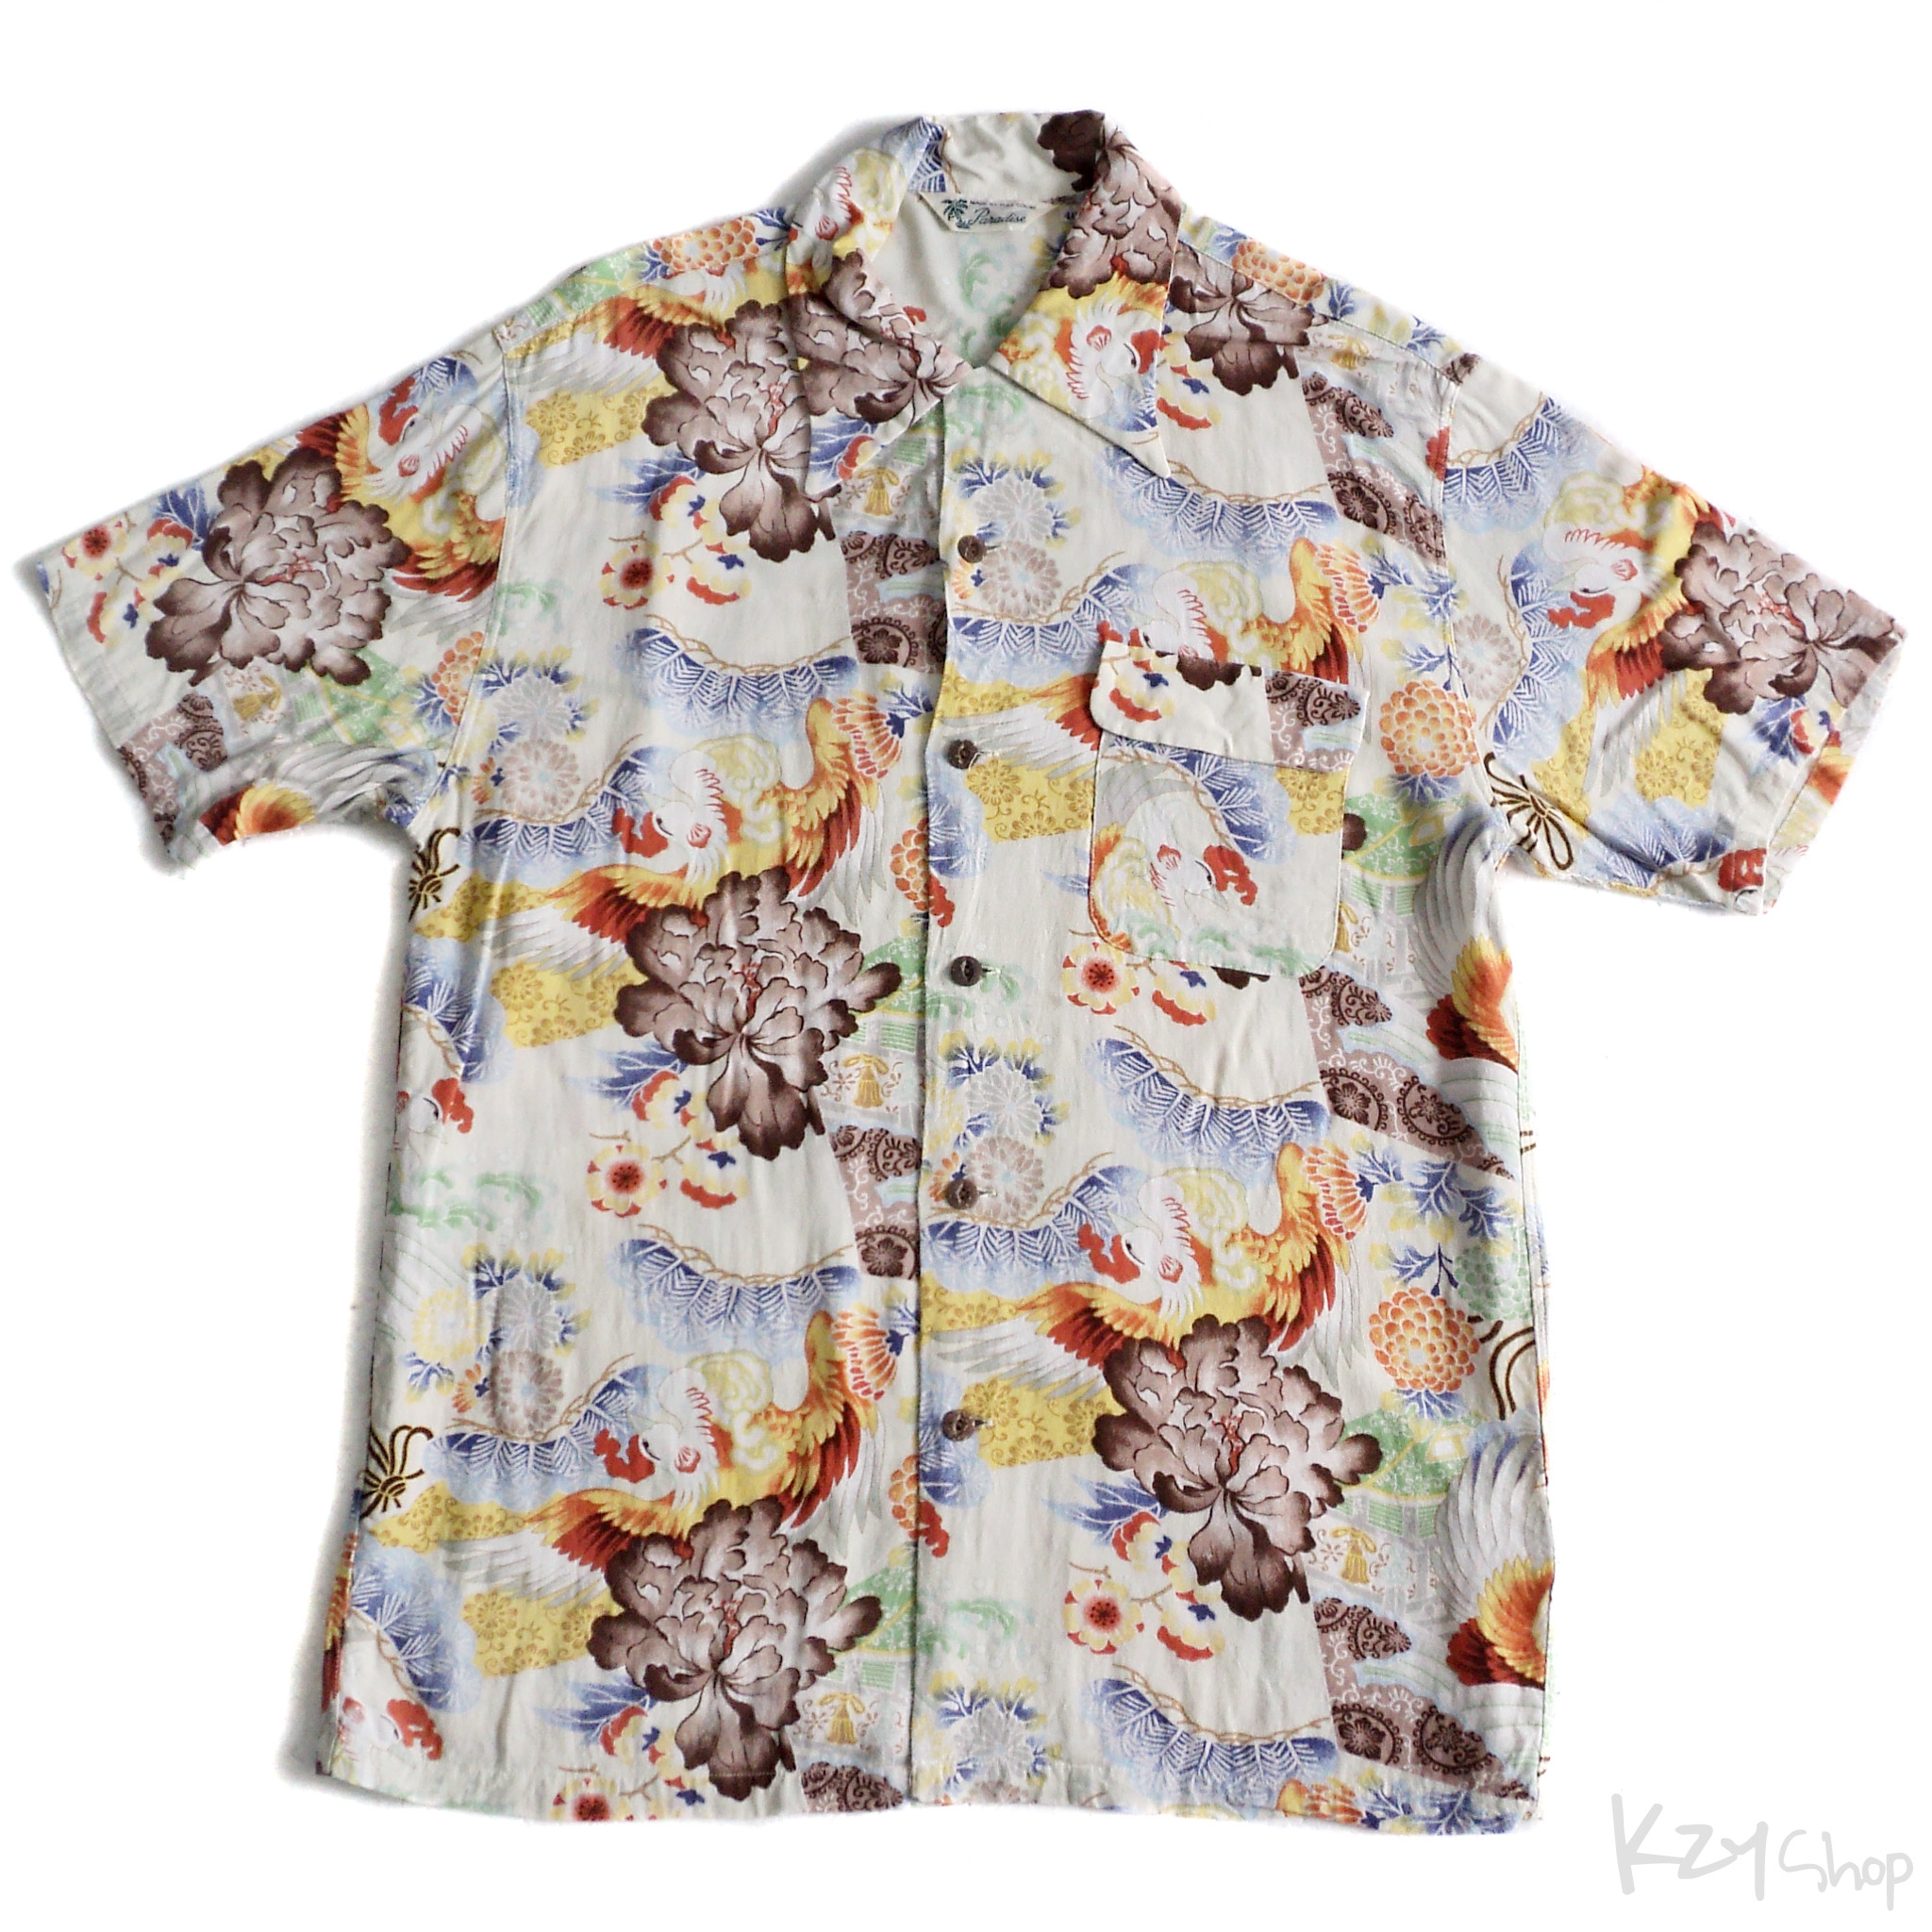 เสื้อฮาวายลายญี่ปุ่น FULL COUNT ลาย ไก่กับดอกโบตั๋น